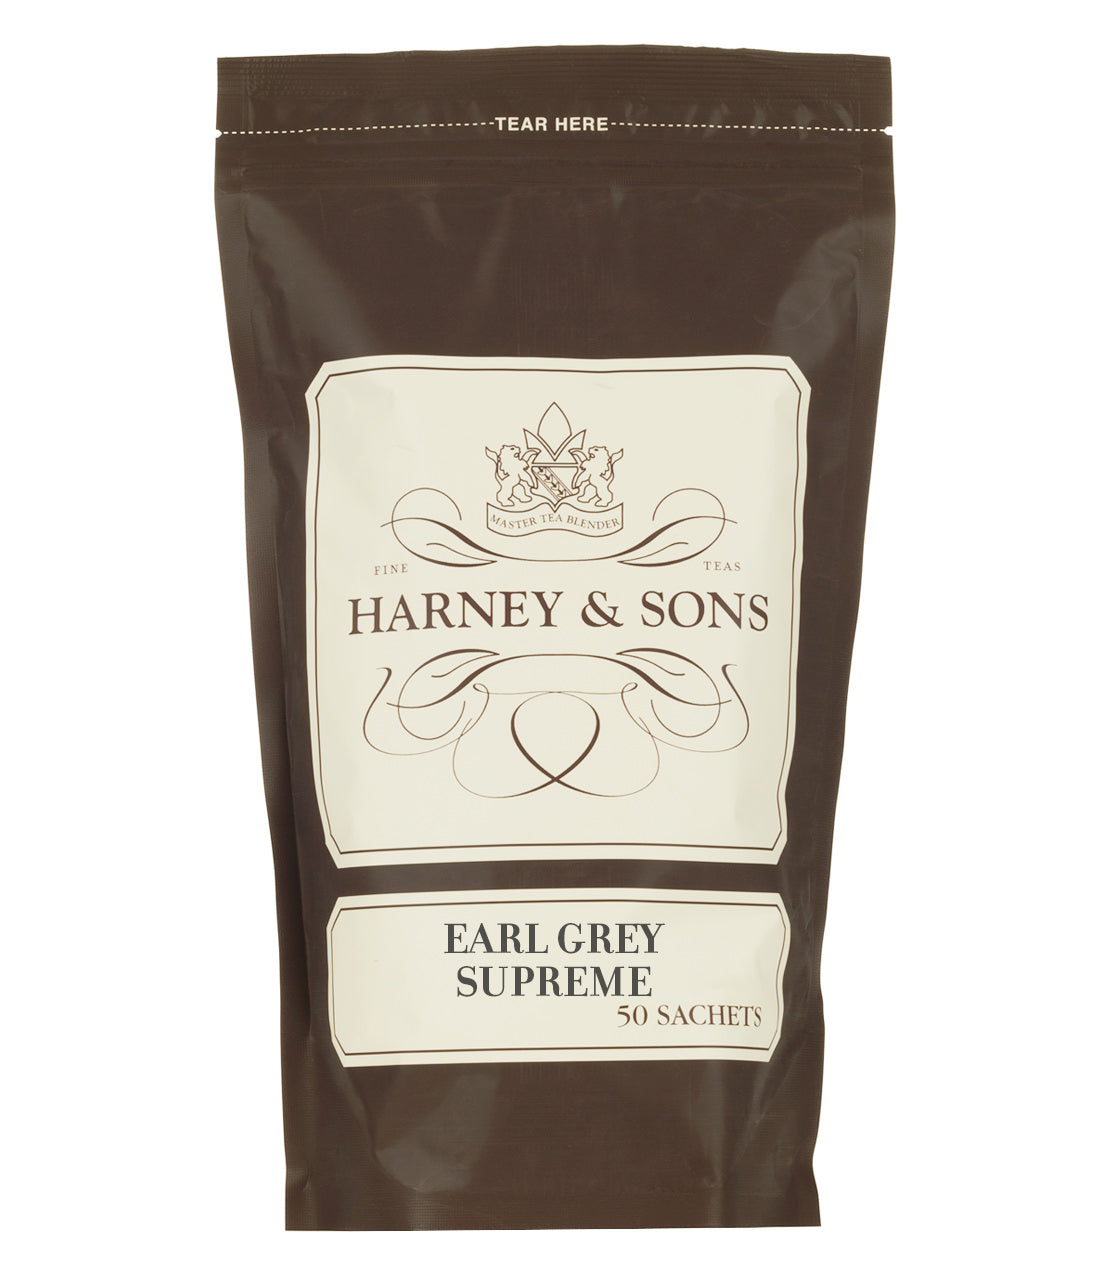 Earl Grey Supreme - Sachets Bag of 50 Sachets - Harney & Sons Fine Teas